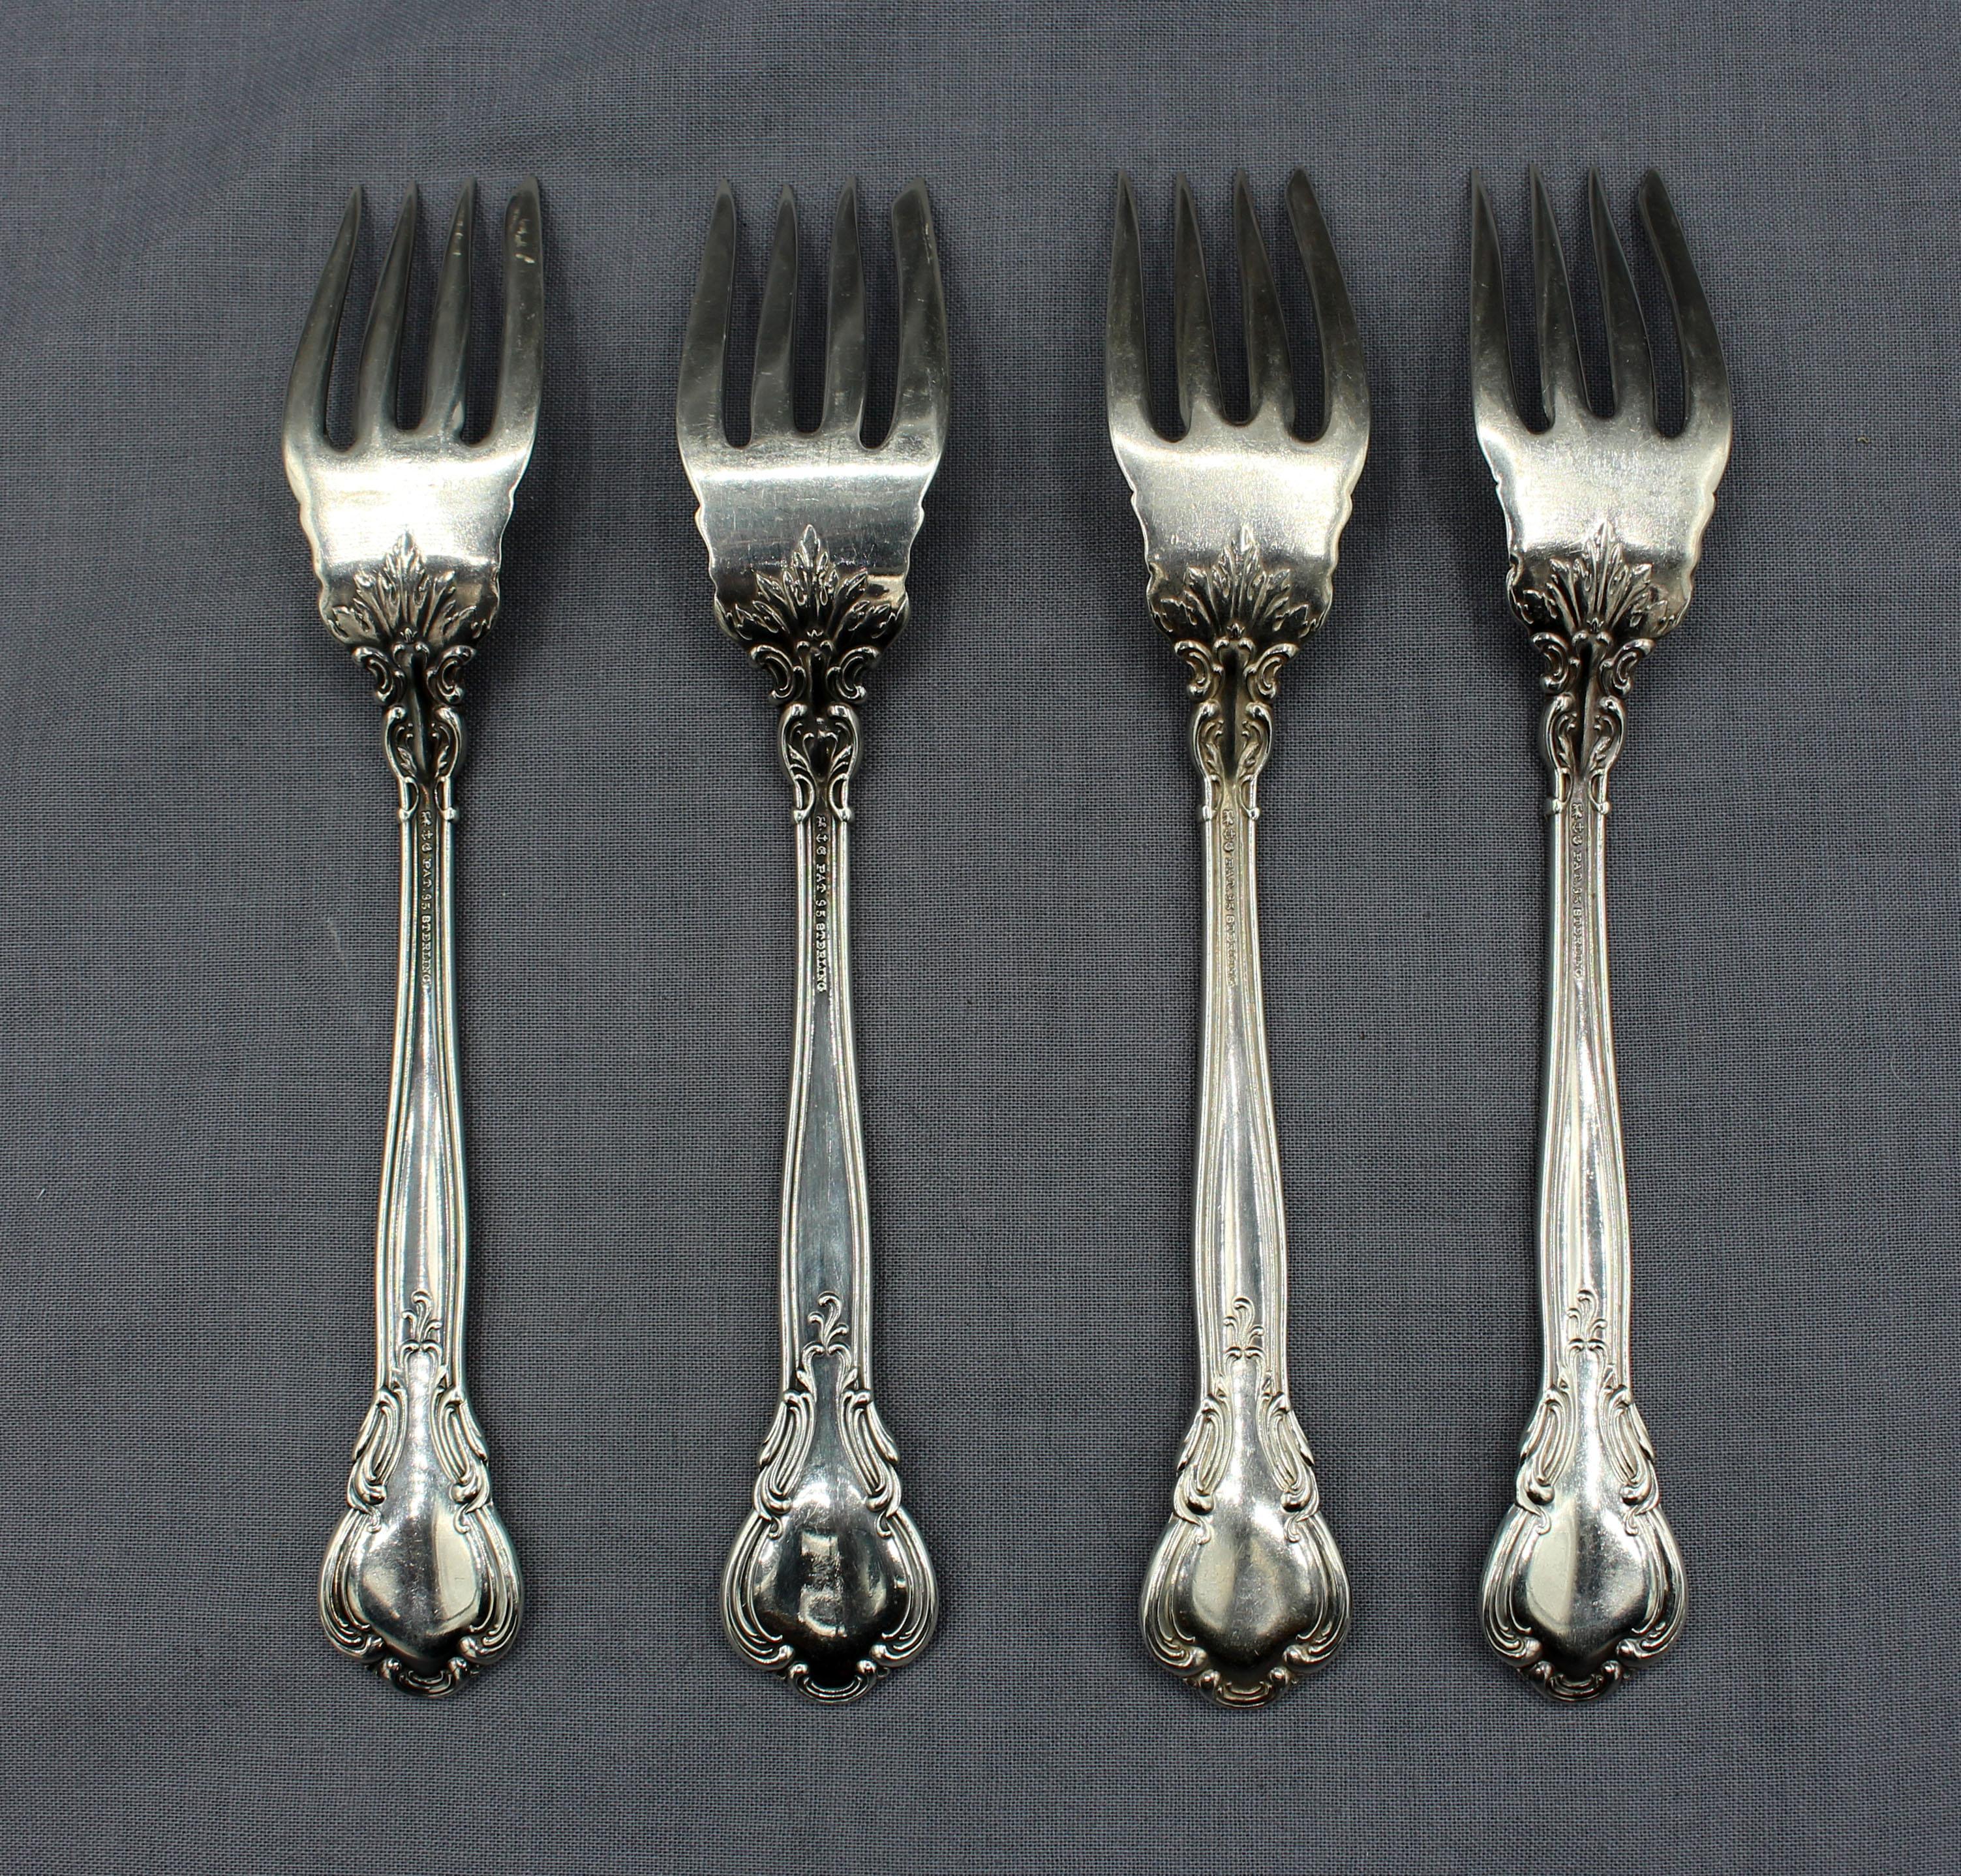 Ensemble de 4 petites fourchettes à poisson en argent sterling de Chantilly par Gorham, 1895-1950. Monogramme 